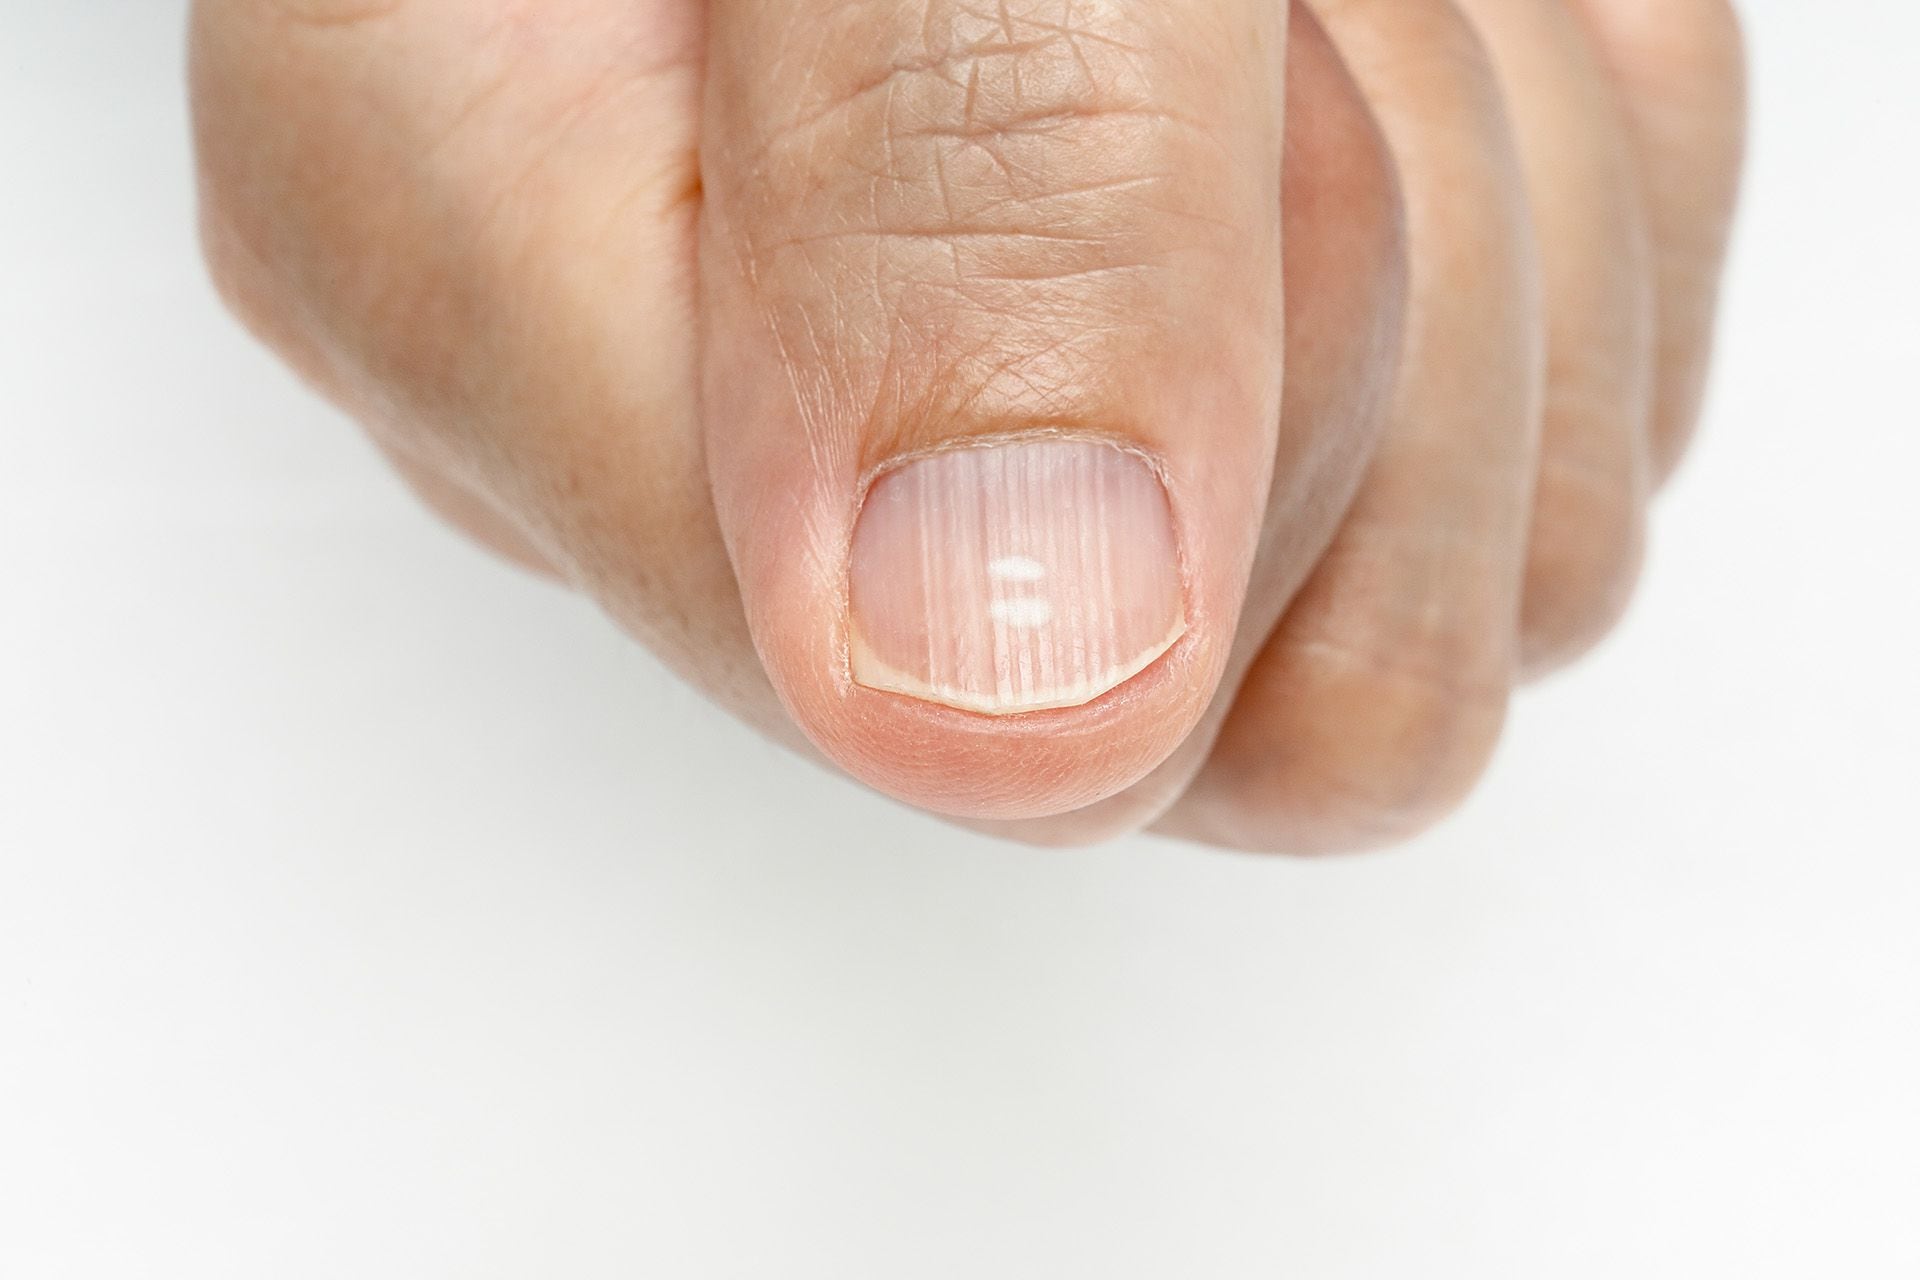 En la imagen: manchas blancas y crestas verticales en las uñas como posible síntomas deficiencia de vitaminas y minerales
Crédito: Freepik